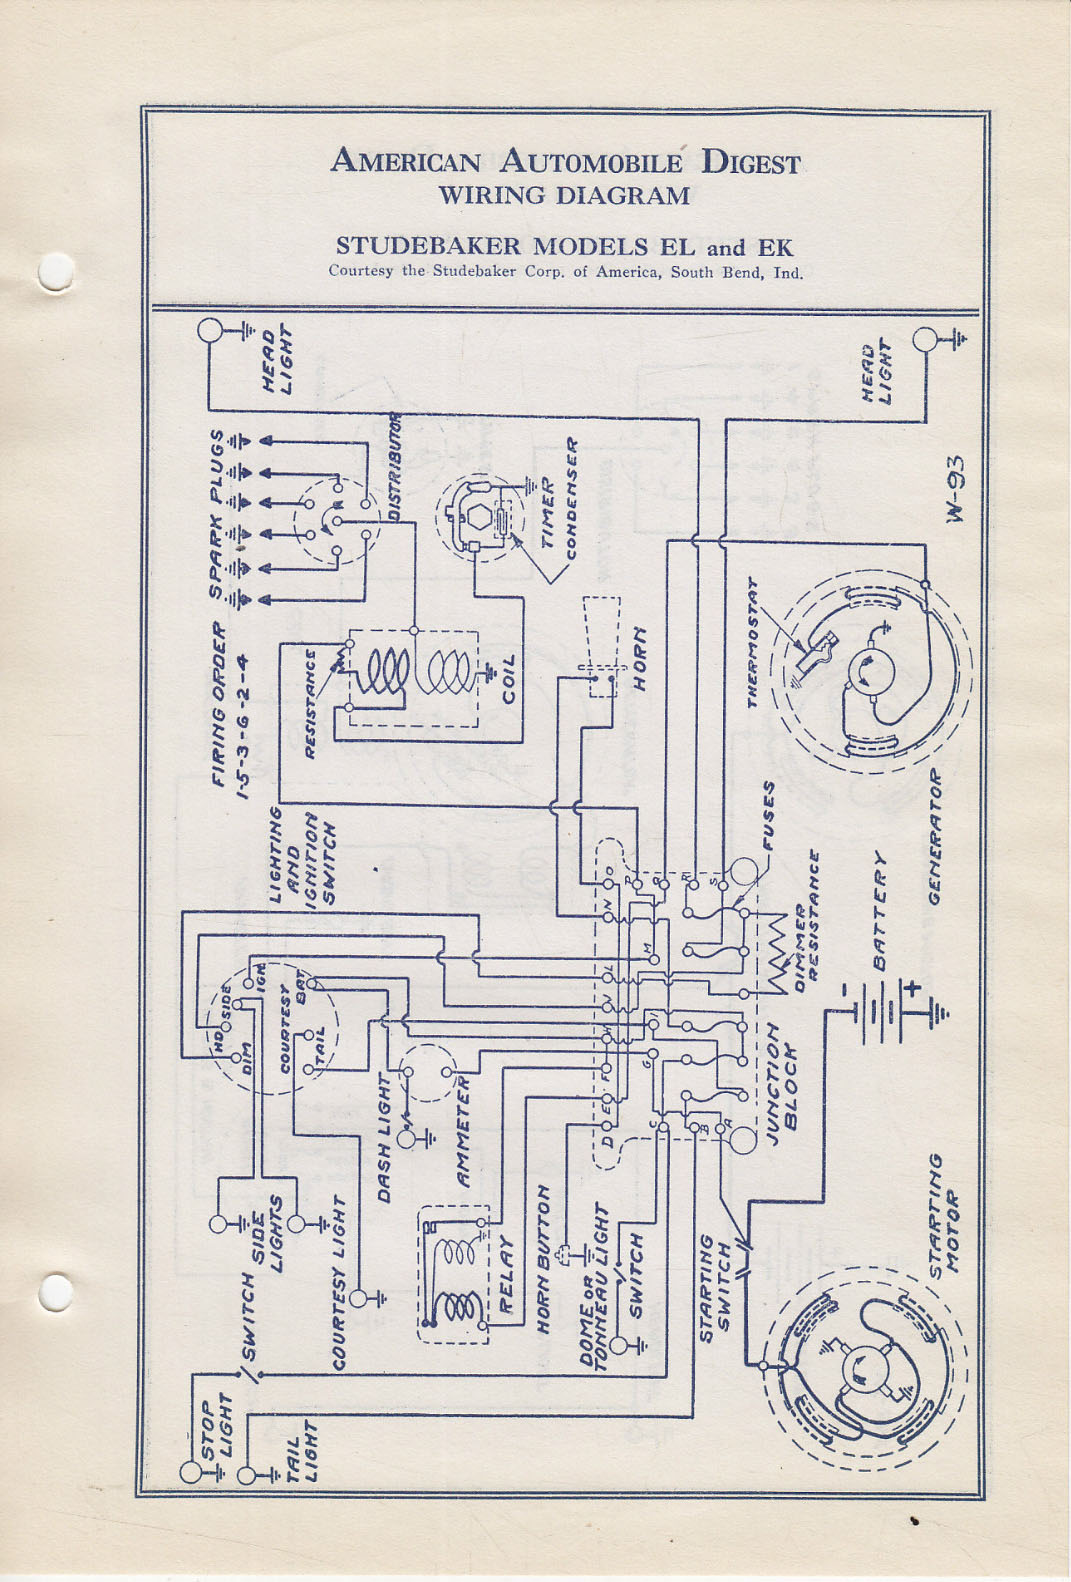 1950 Studebaker Wiring Diagram : 51 Studebaker Wiring Diagram - Wiring